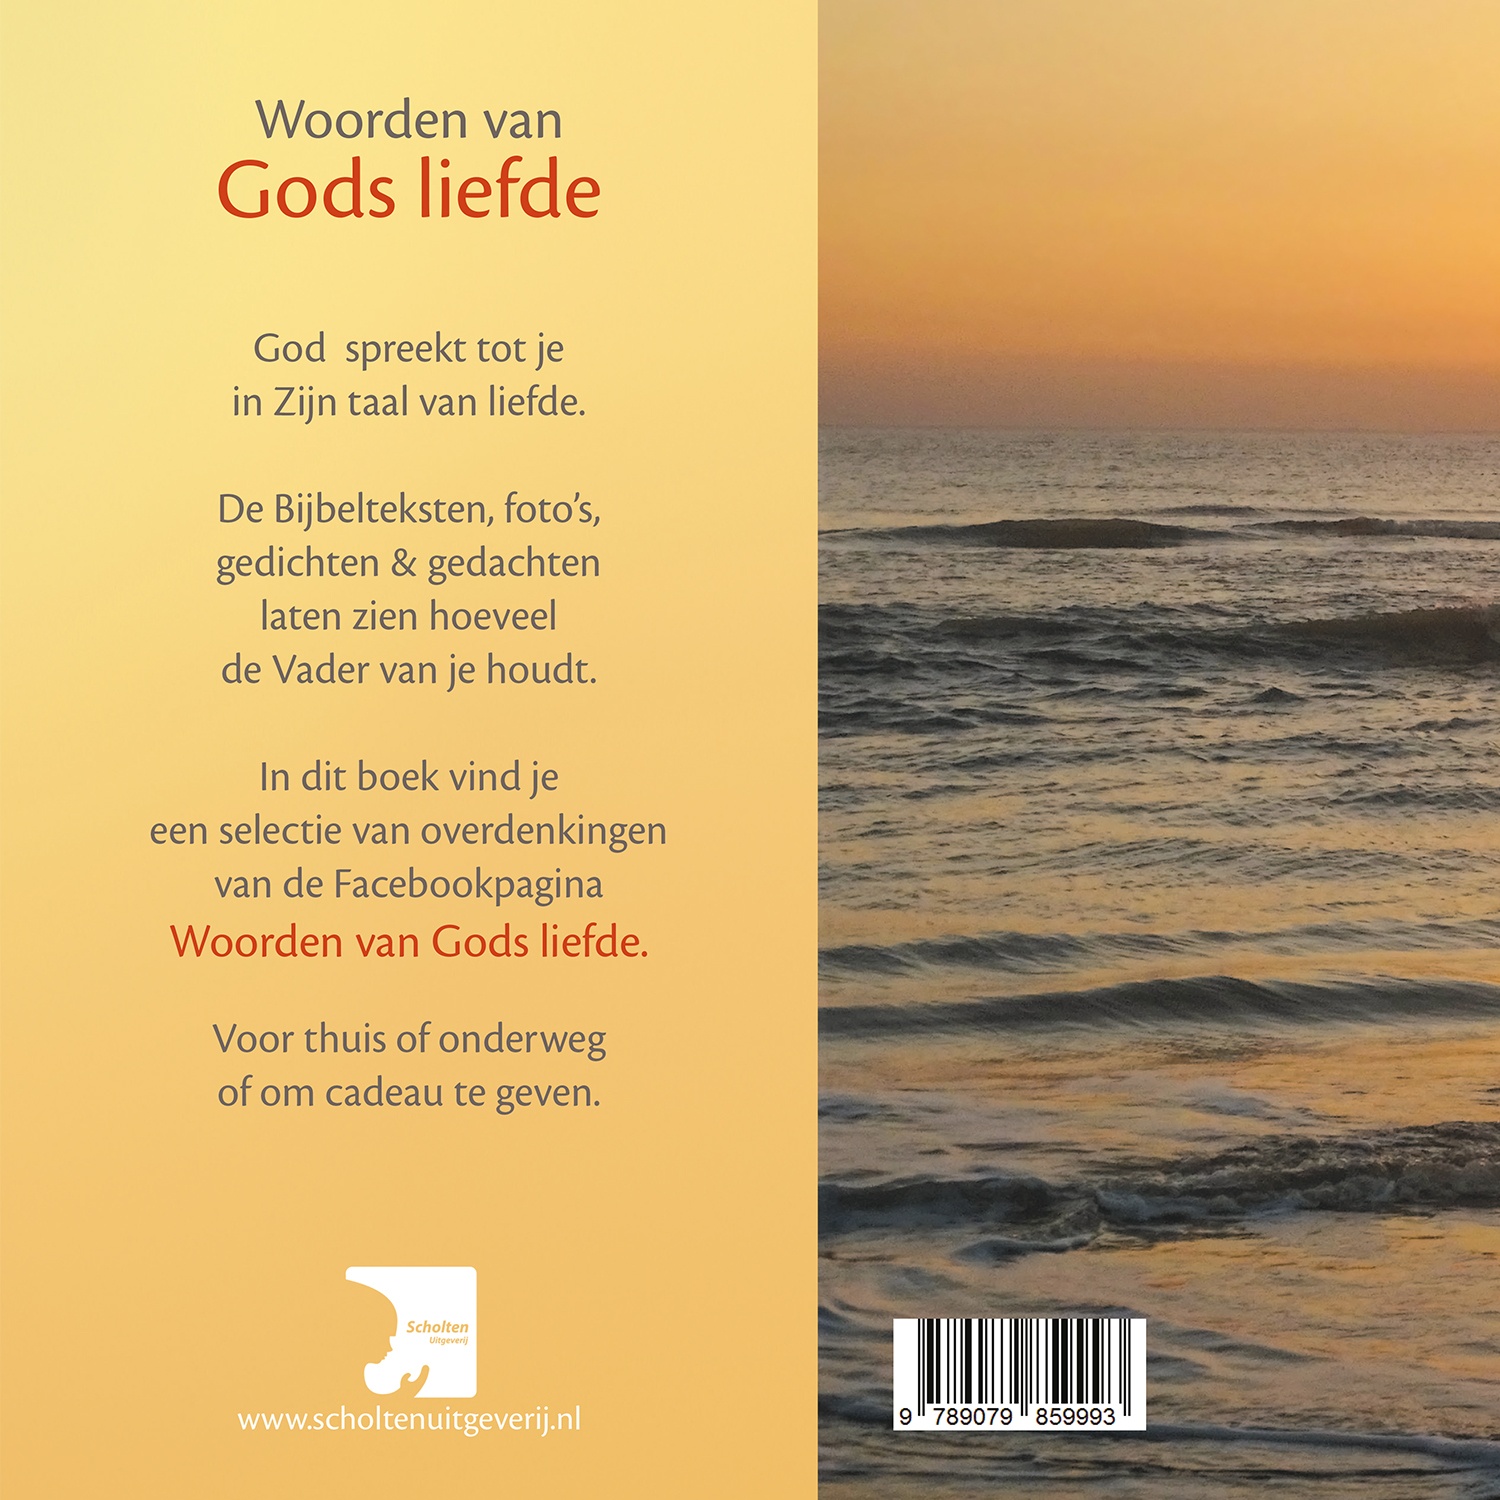 Verrassend Woorden van Gods Liefde, Ans Heij, €13,50 (gratis verz.) SY-29